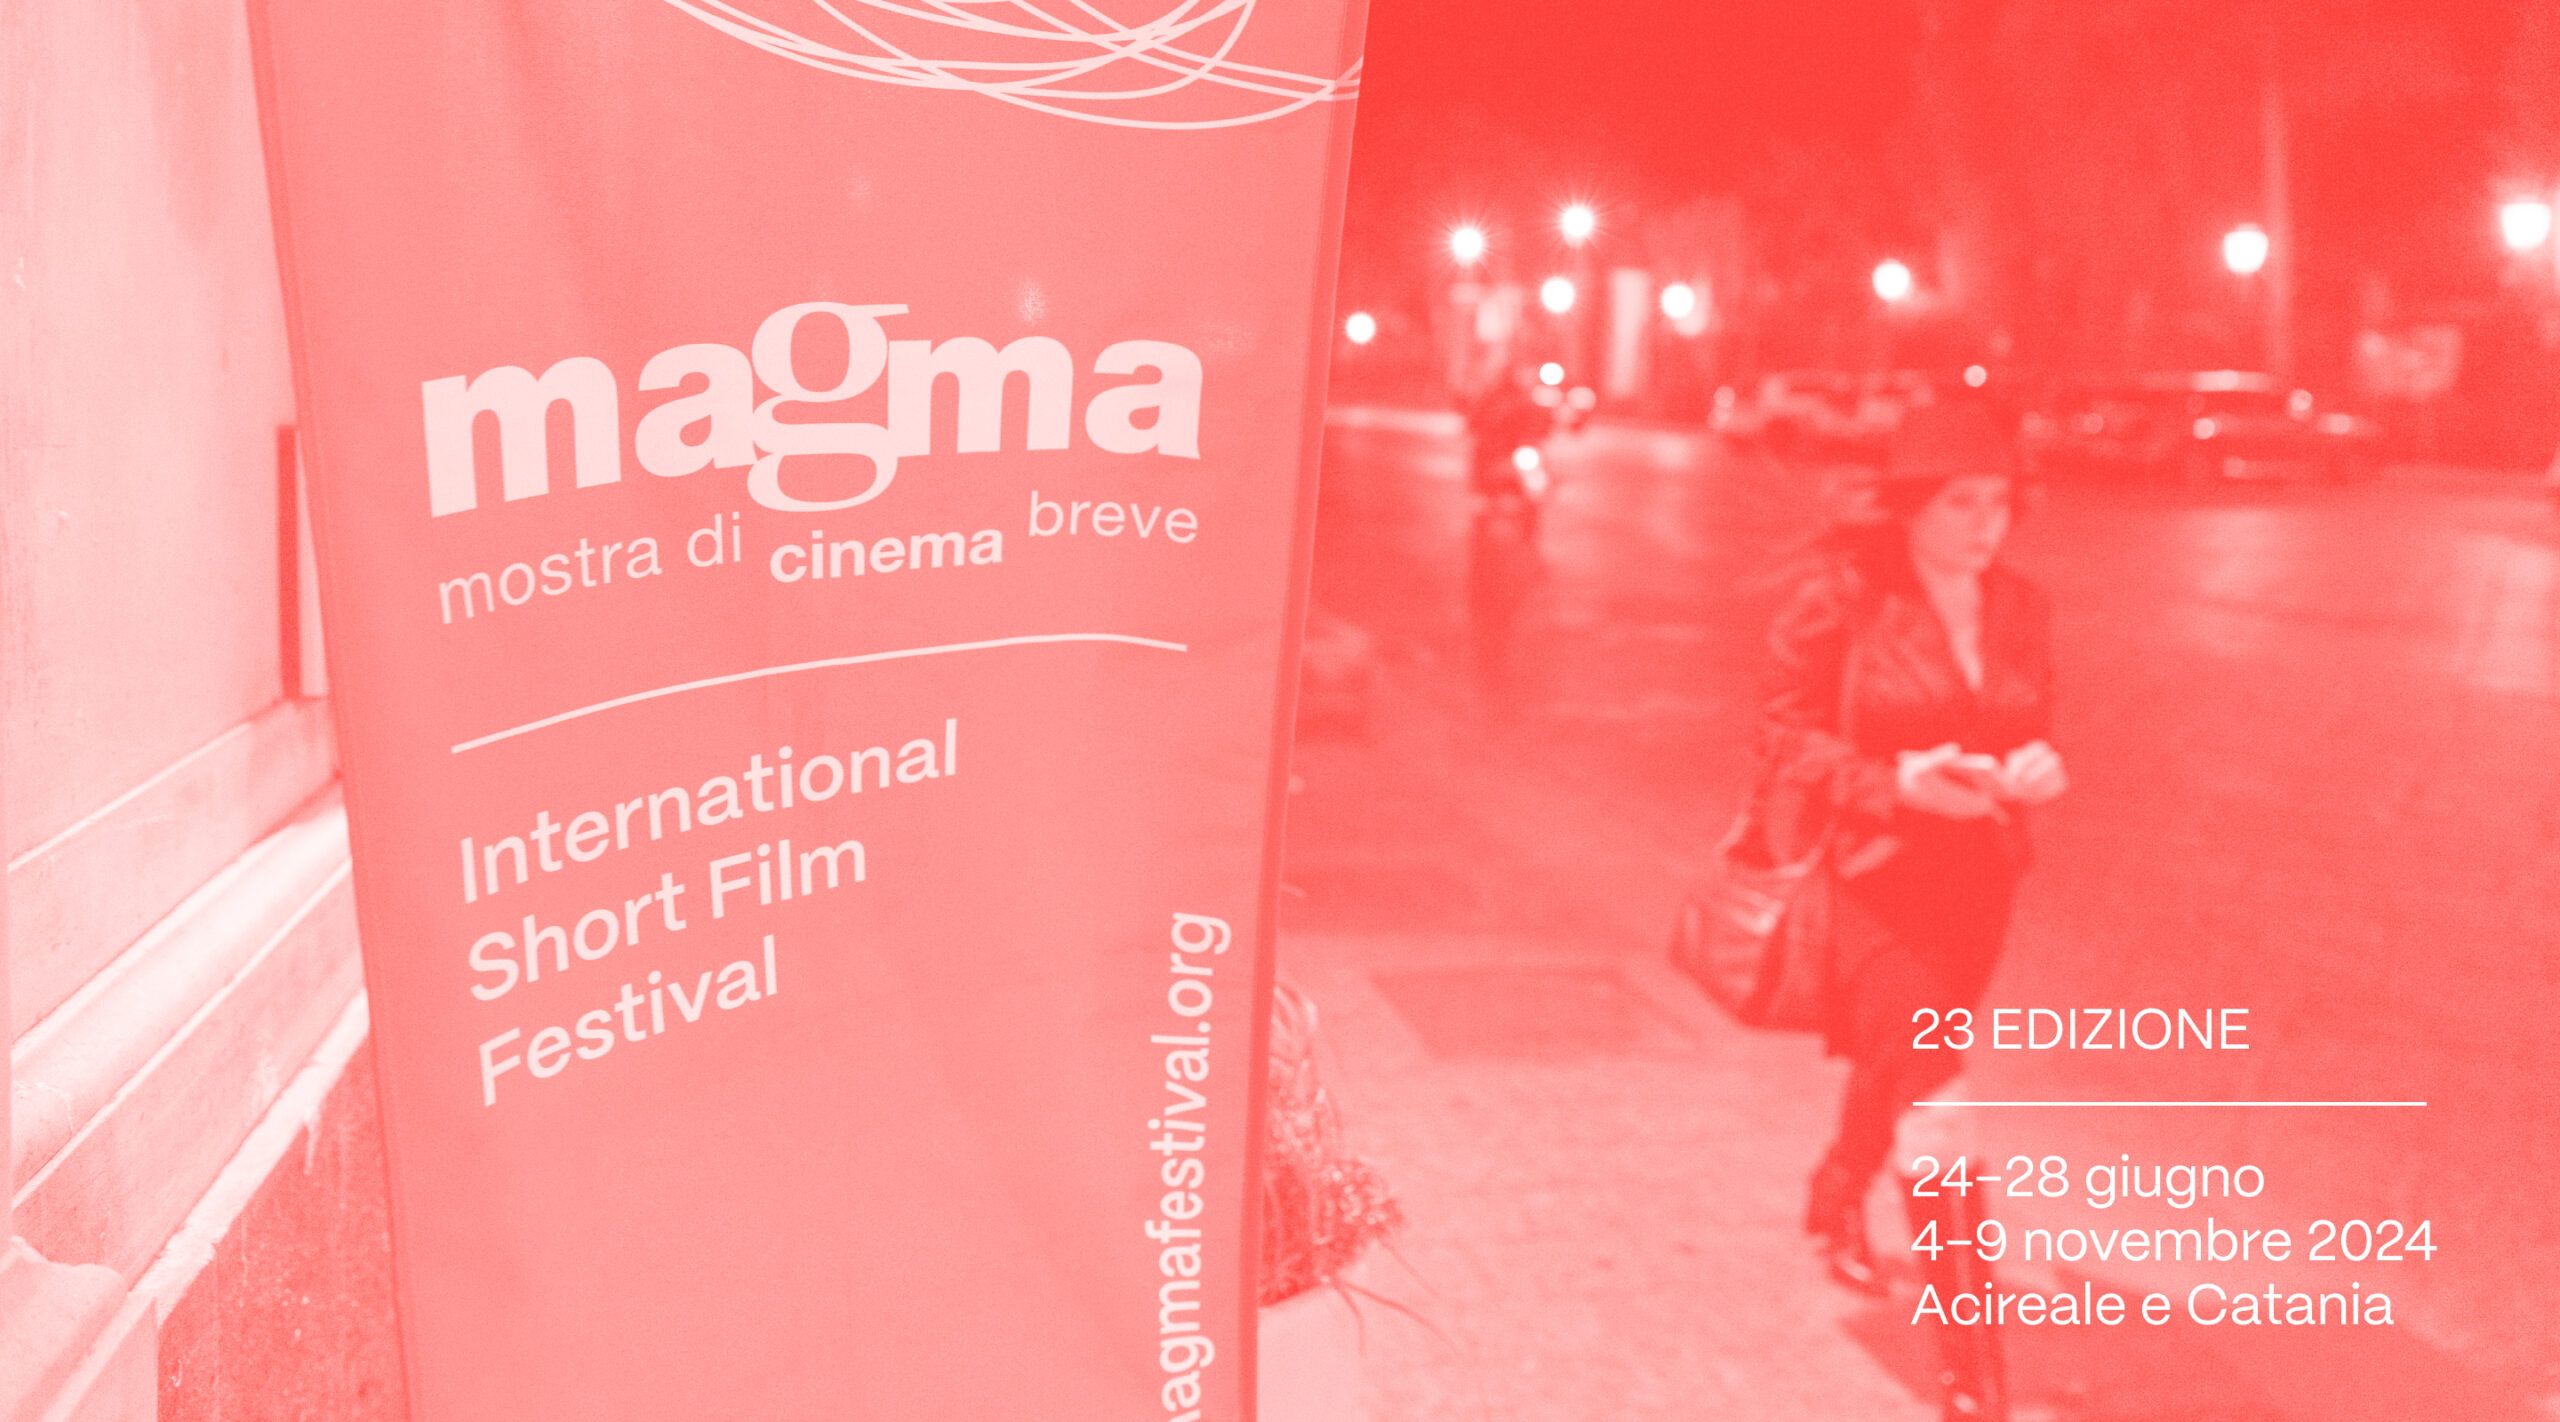 MAGMA MOSTRA DI CINEMA BREVE FESTIVA CINEMATOGRAFICO